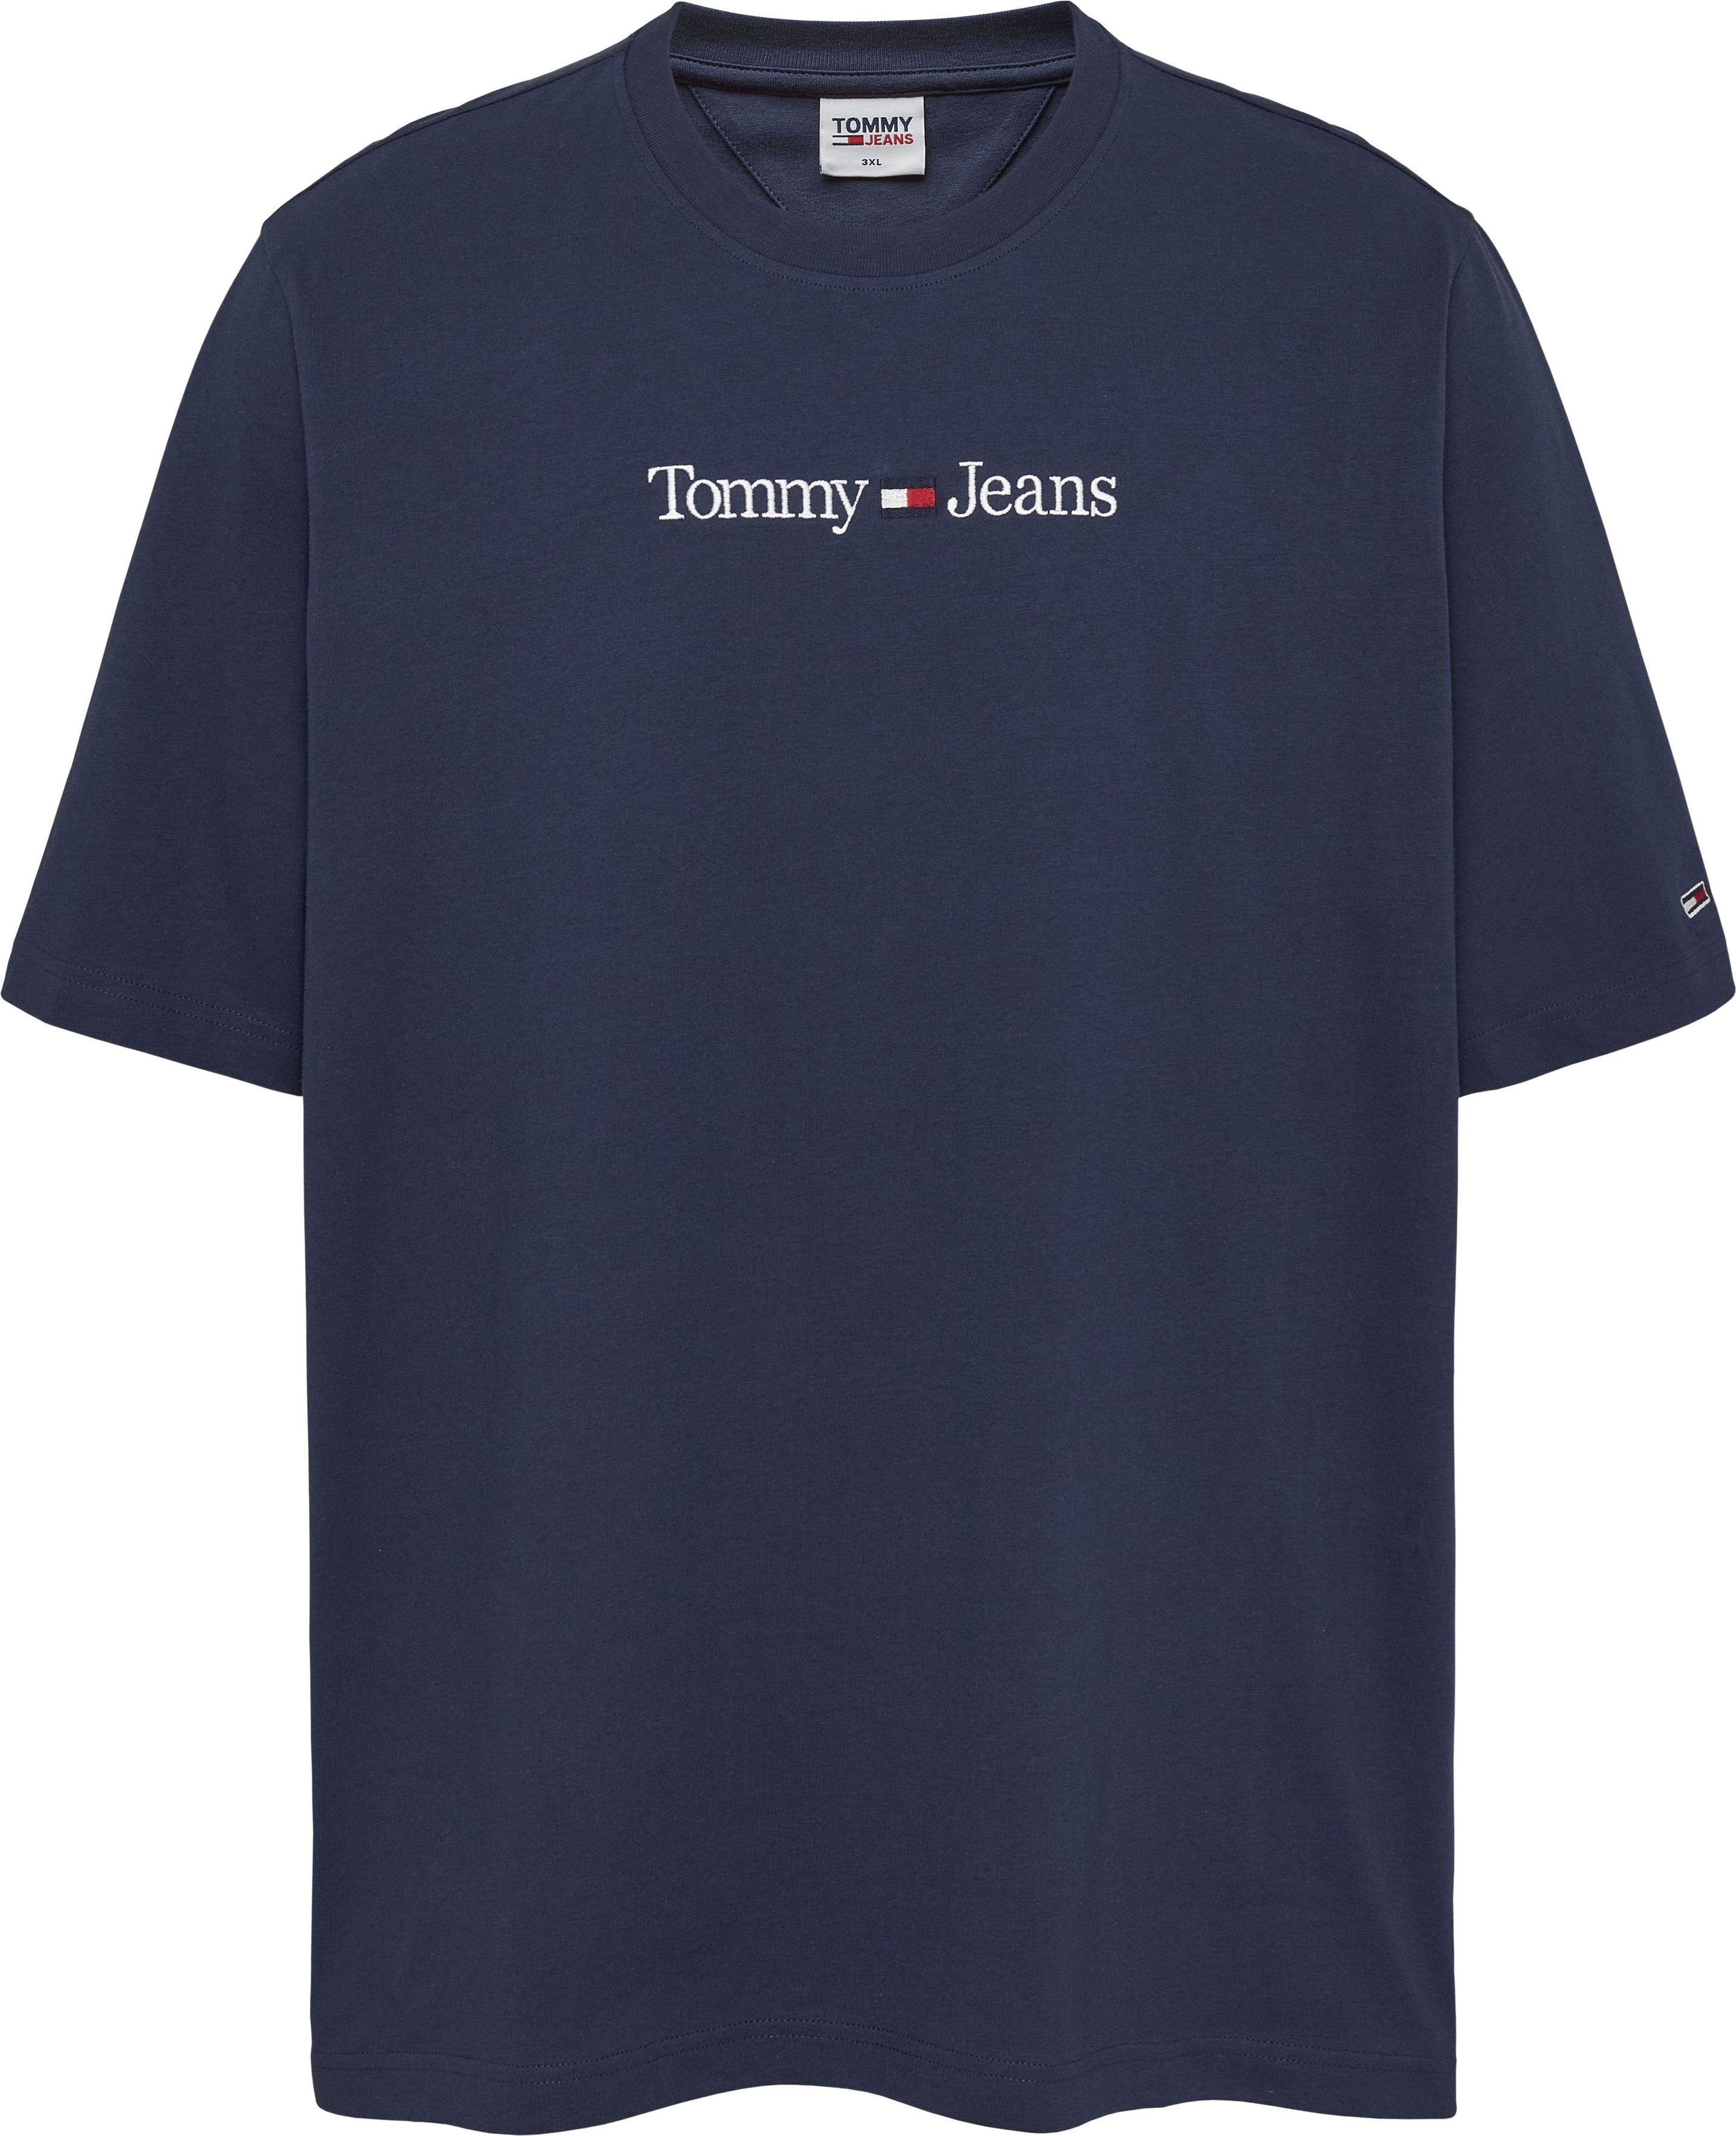 auf Brust navy Plus TJM Branding LINEAR Tommy-Jeans der PLUS mit Tommy LO Jeans T-Shirt